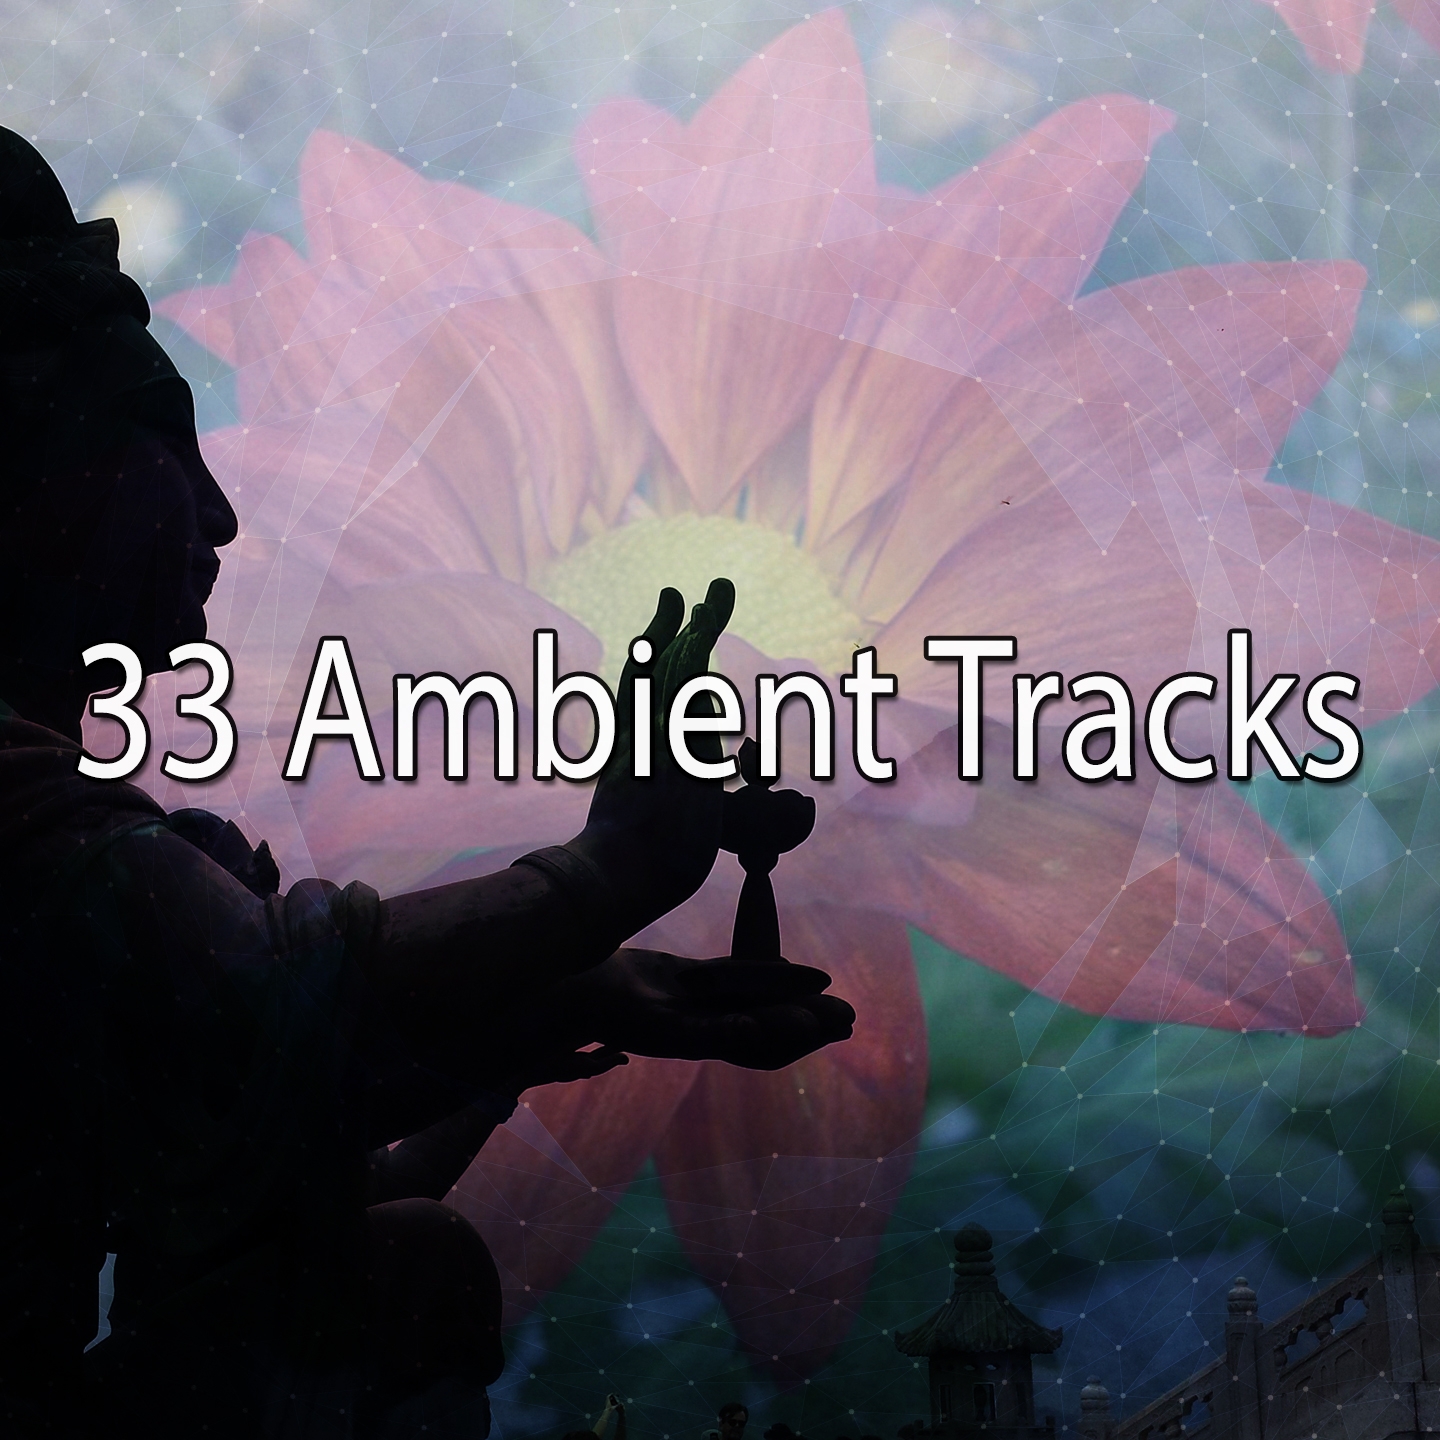 33 Ambient Tracks